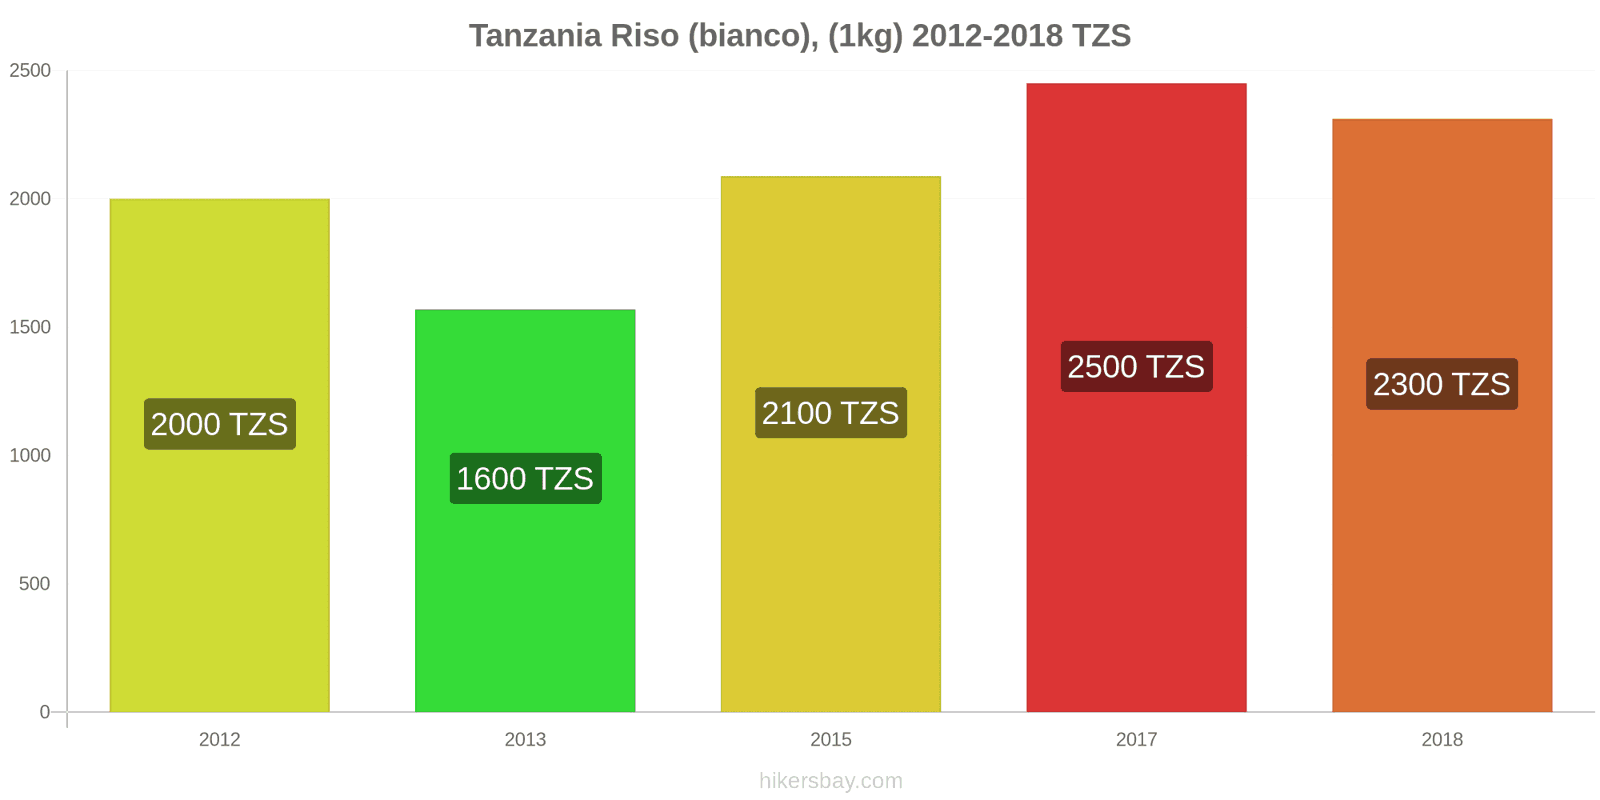 Tanzania cambi di prezzo Chilo di riso bianco hikersbay.com